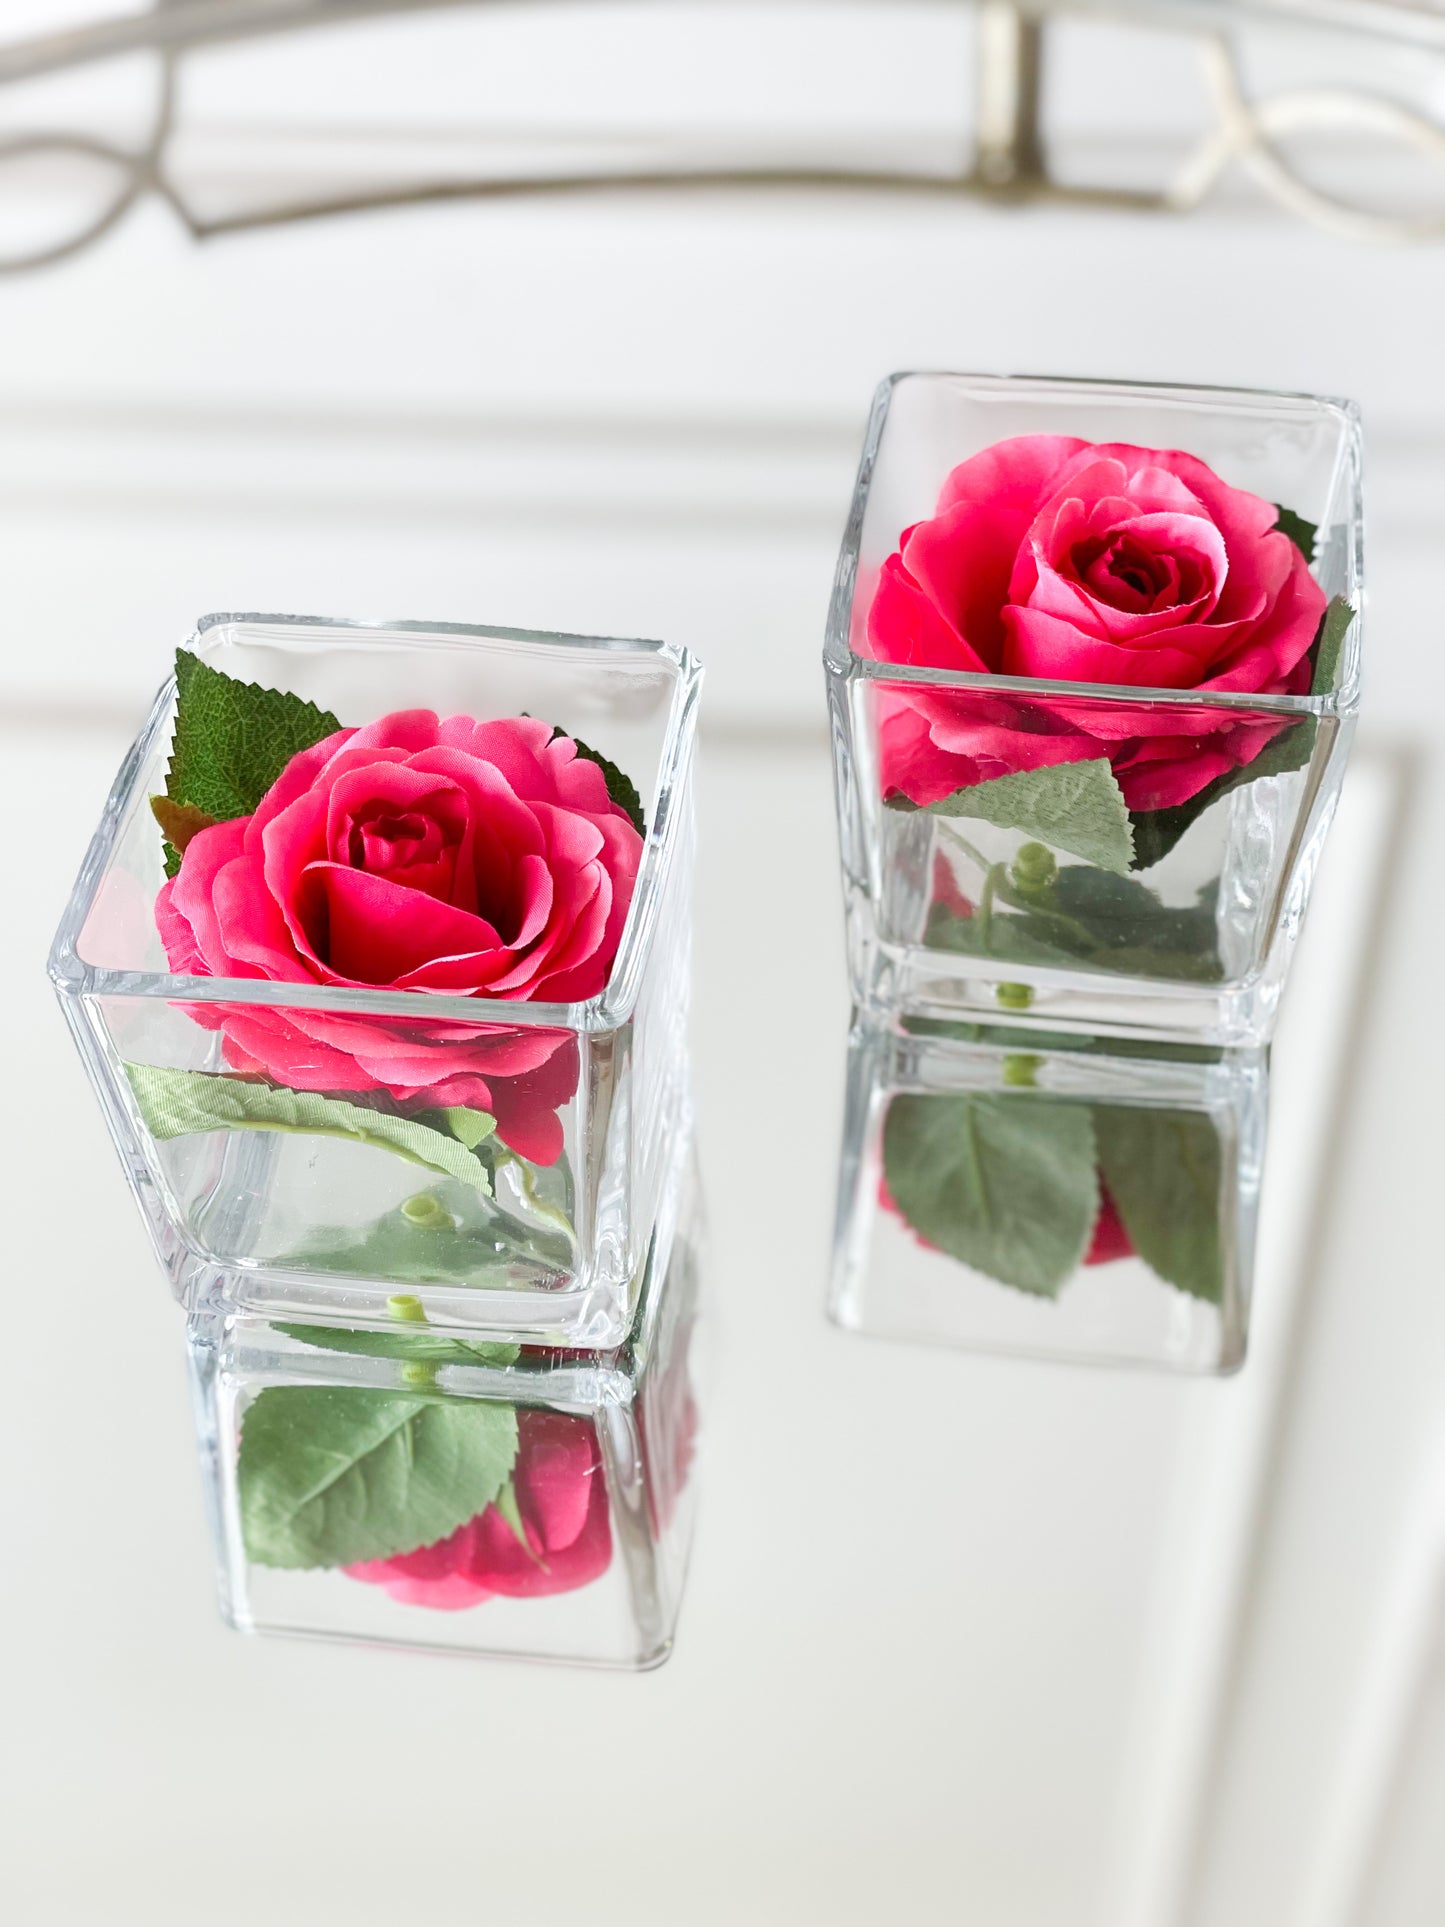 Pink Rose Bloom In Glass Vase